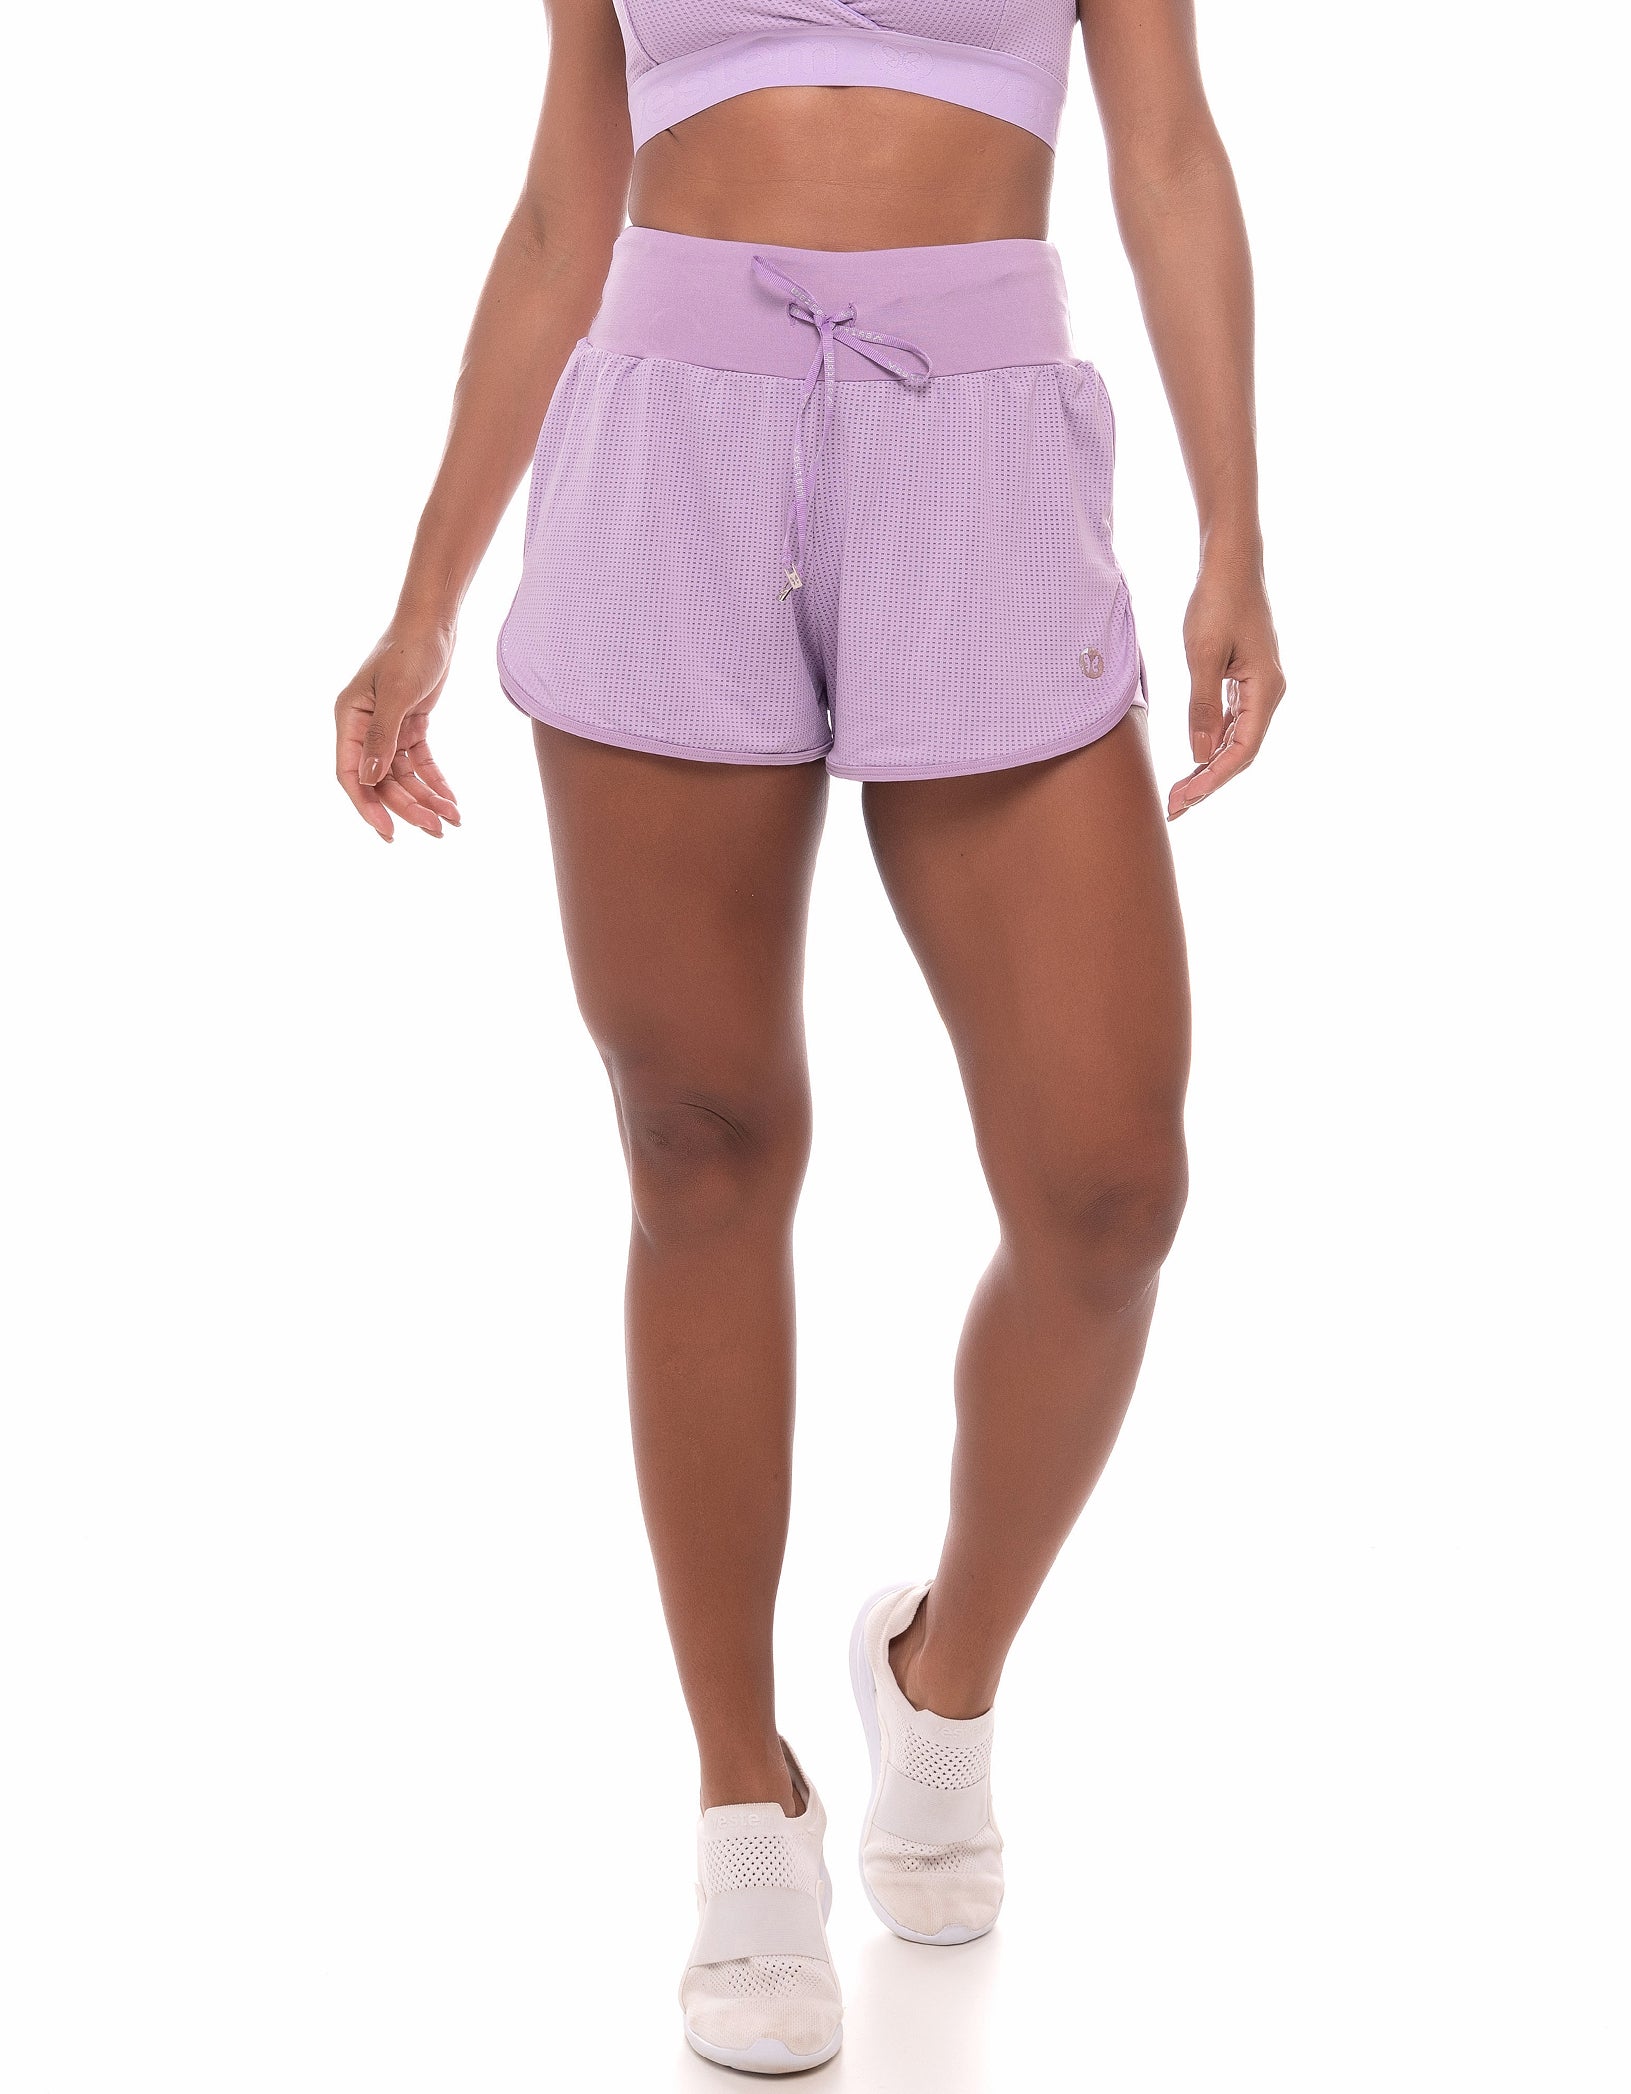 Vestem - Leblon Lilac Purple Shorts - SH452C0023